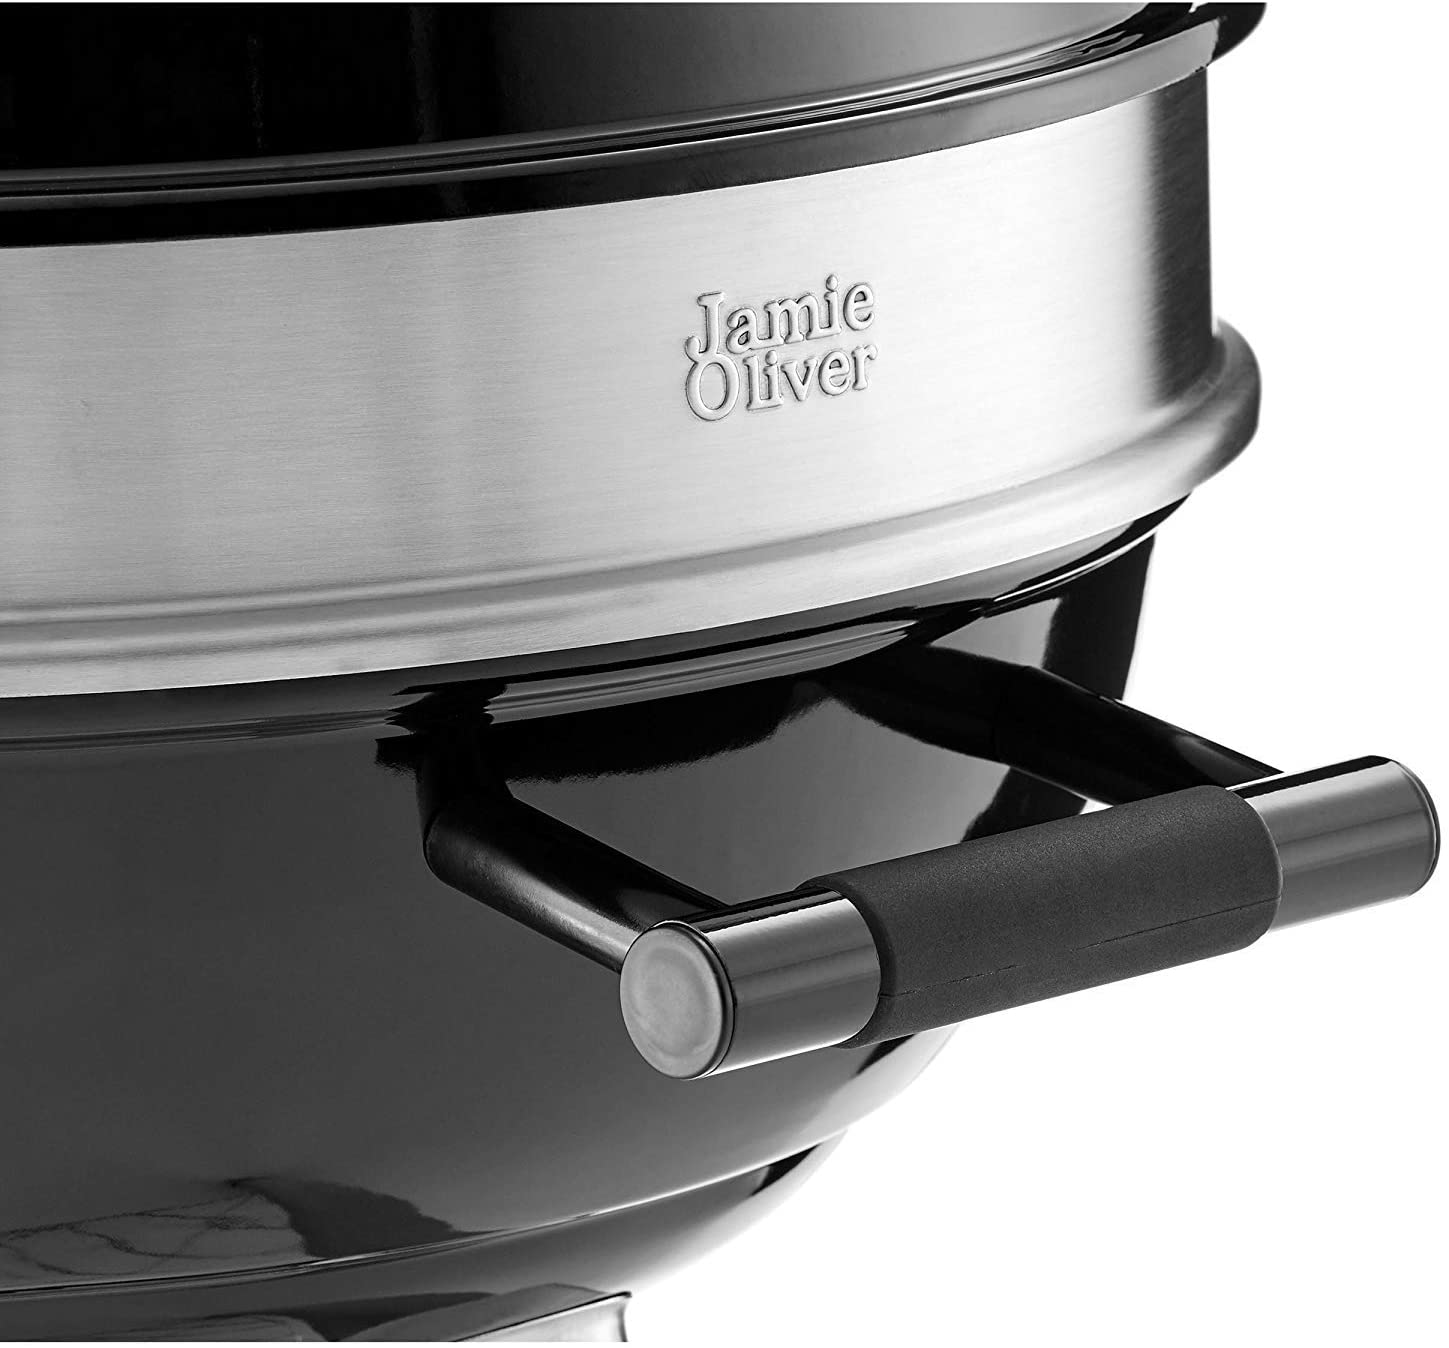  Jamie Oliver Grill Das sind die besten Gasgrills und Kugelgrills